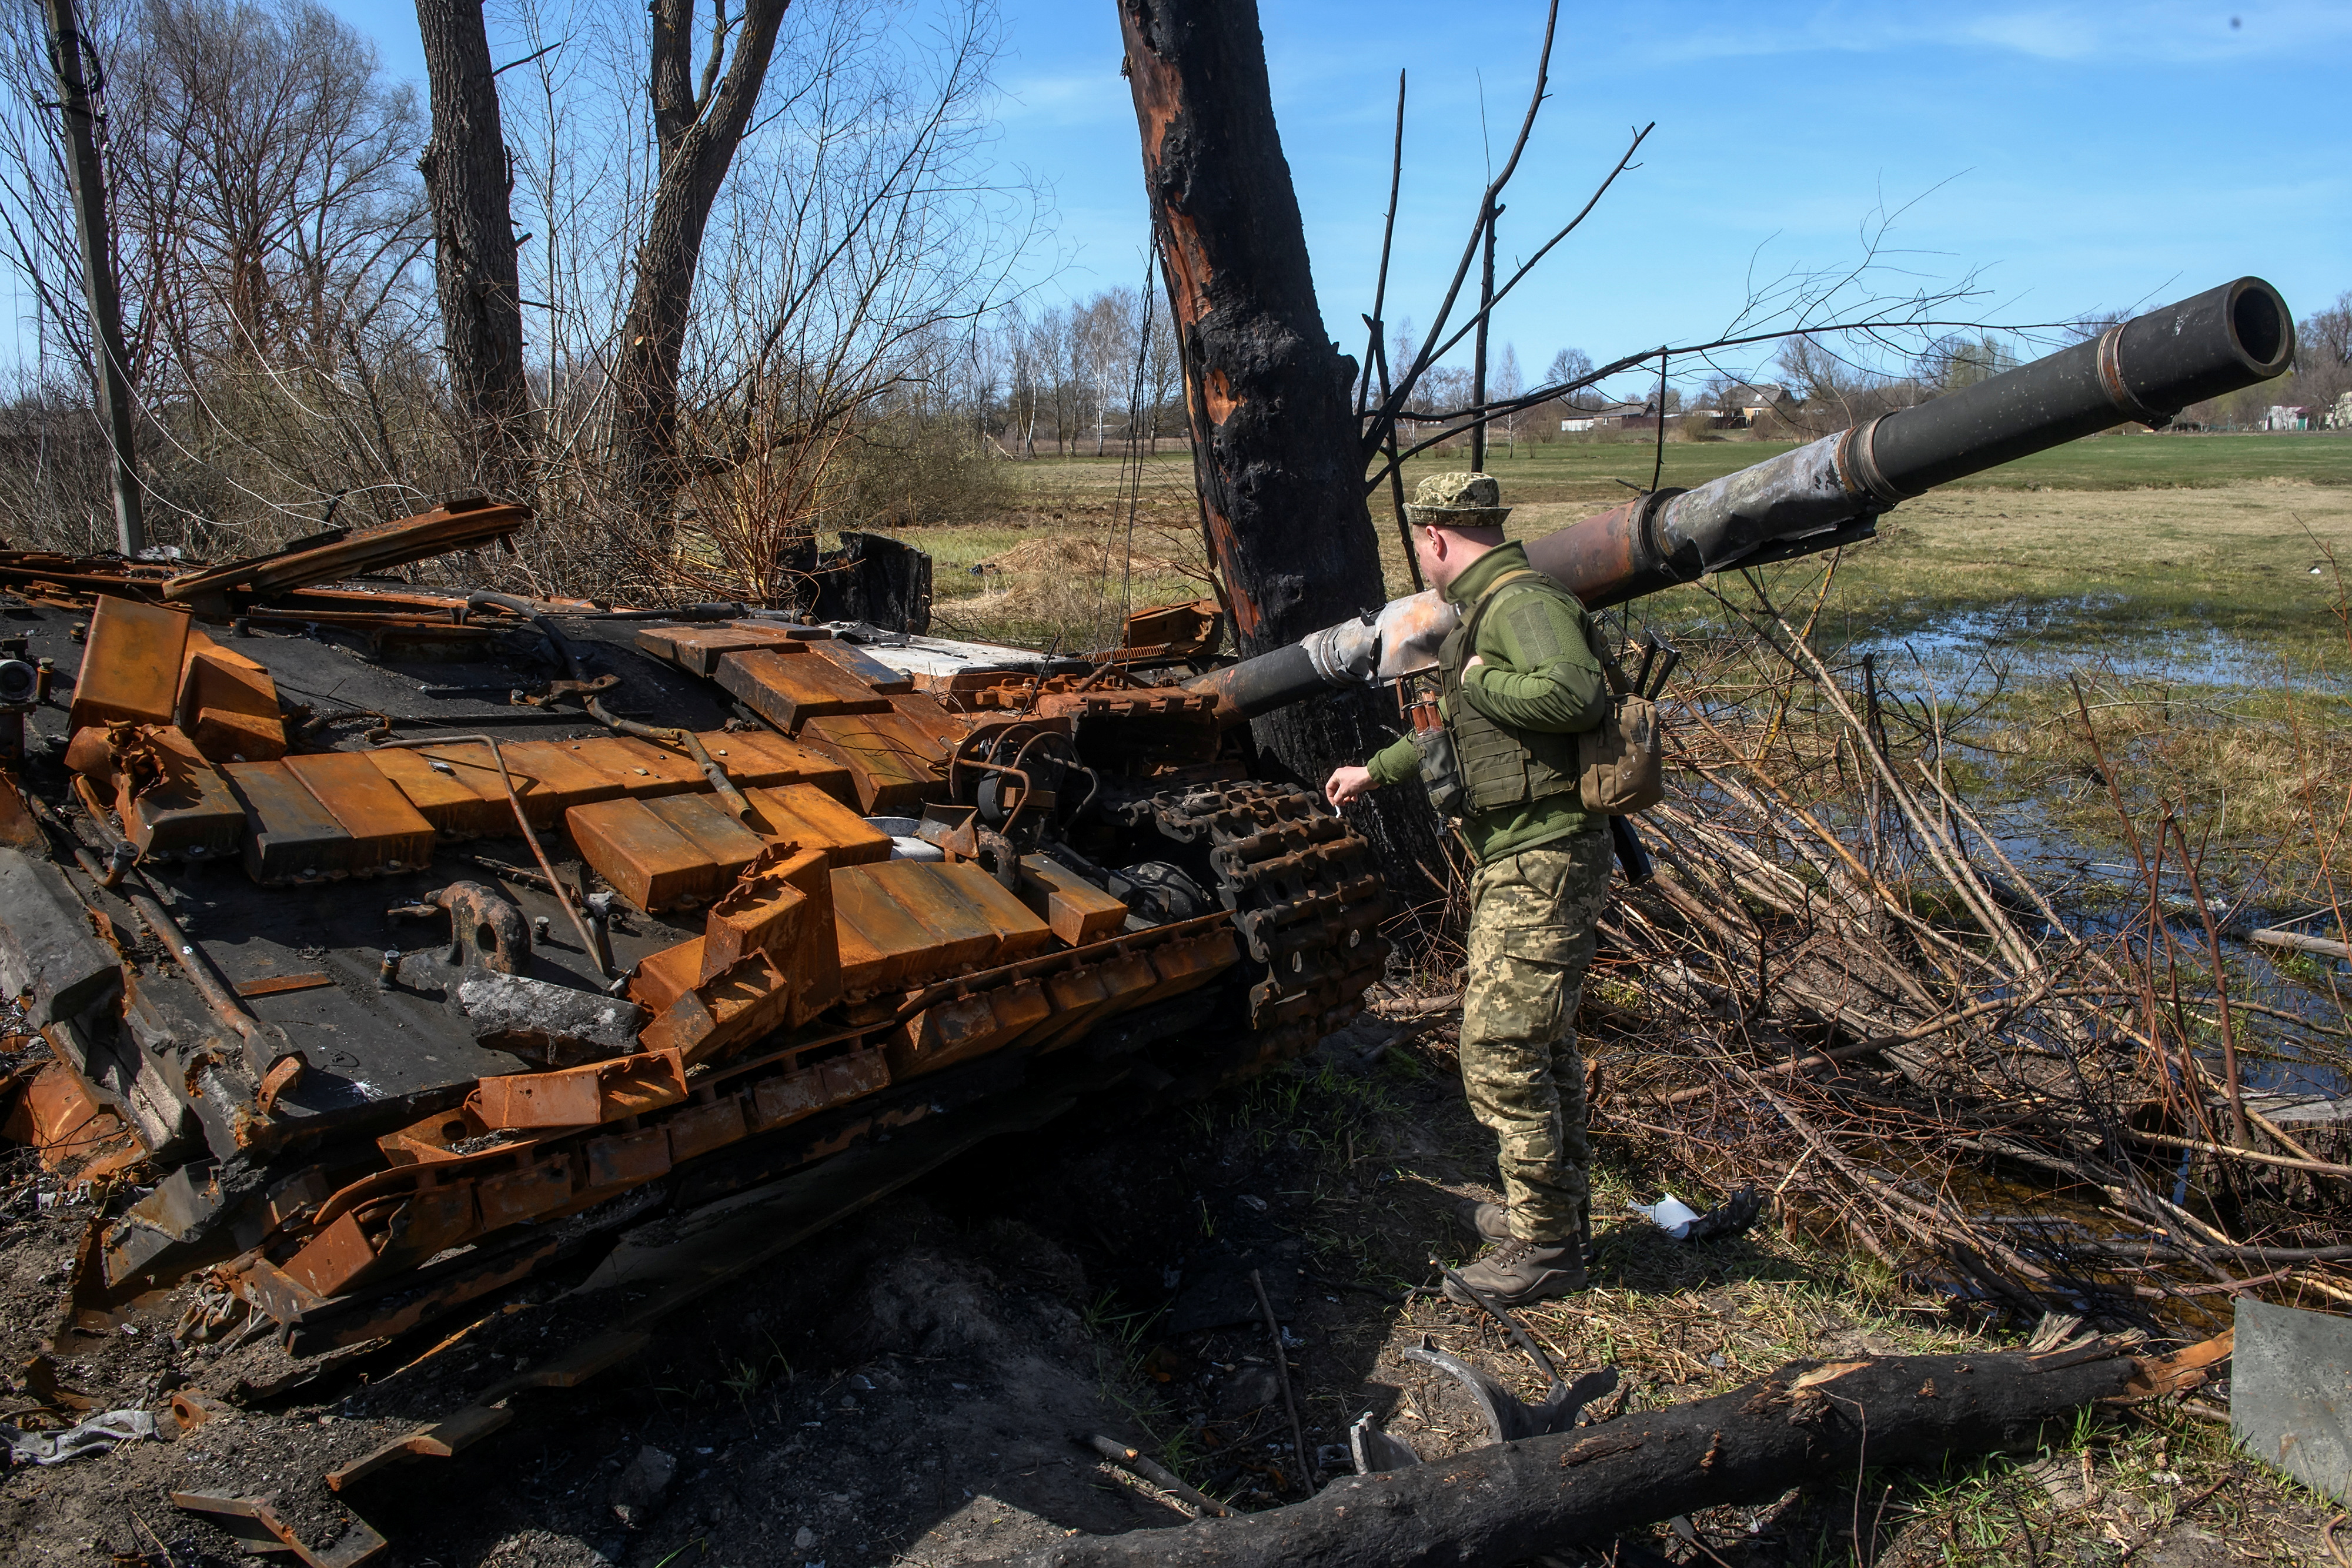 Un miembro del servicio ucraniano inspecciona los restos de un tanque destruido durante la invasión rusa, en el pueblo de Termakhivka, en la región de Kiev, Ucrania el 14 de abril de 2022.  REUTERS/Vladyslav Musiienko